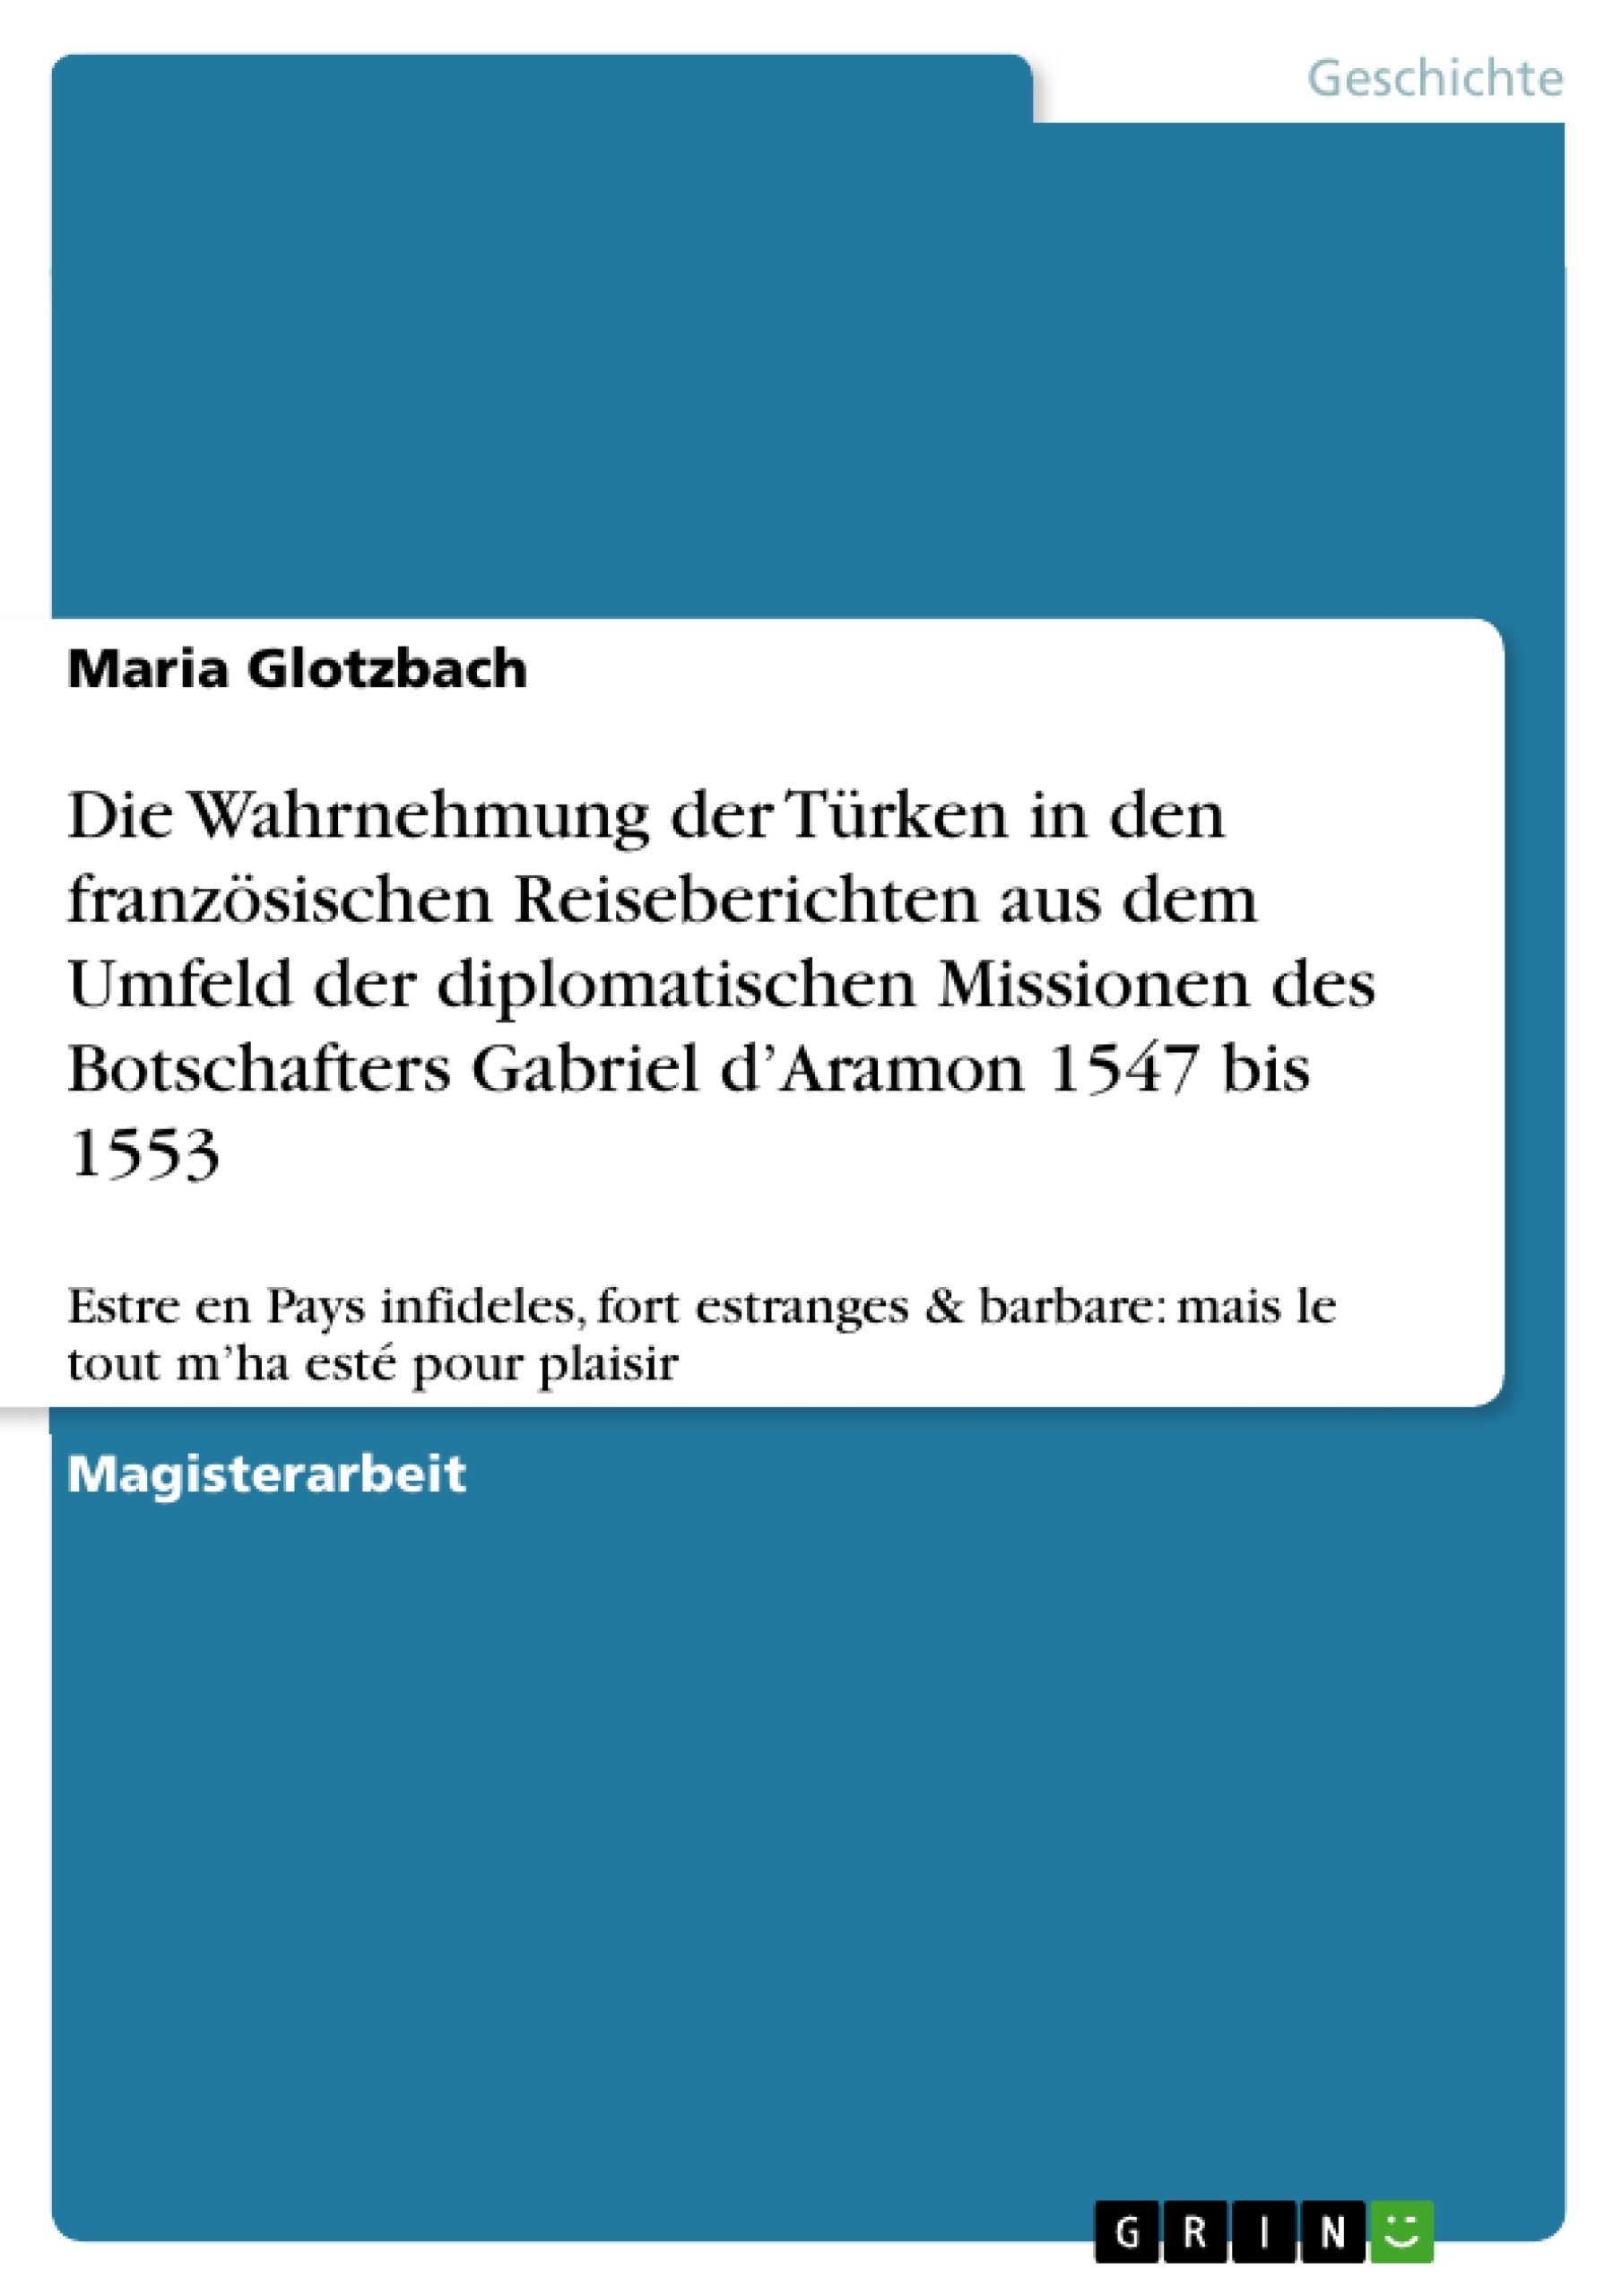 Titel: Die Wahrnehmung der Türken in den französischen Reiseberichten aus dem Umfeld der diplomatischen Missionen des Botschafters Gabriel d’Aramon 1547 bis 1553